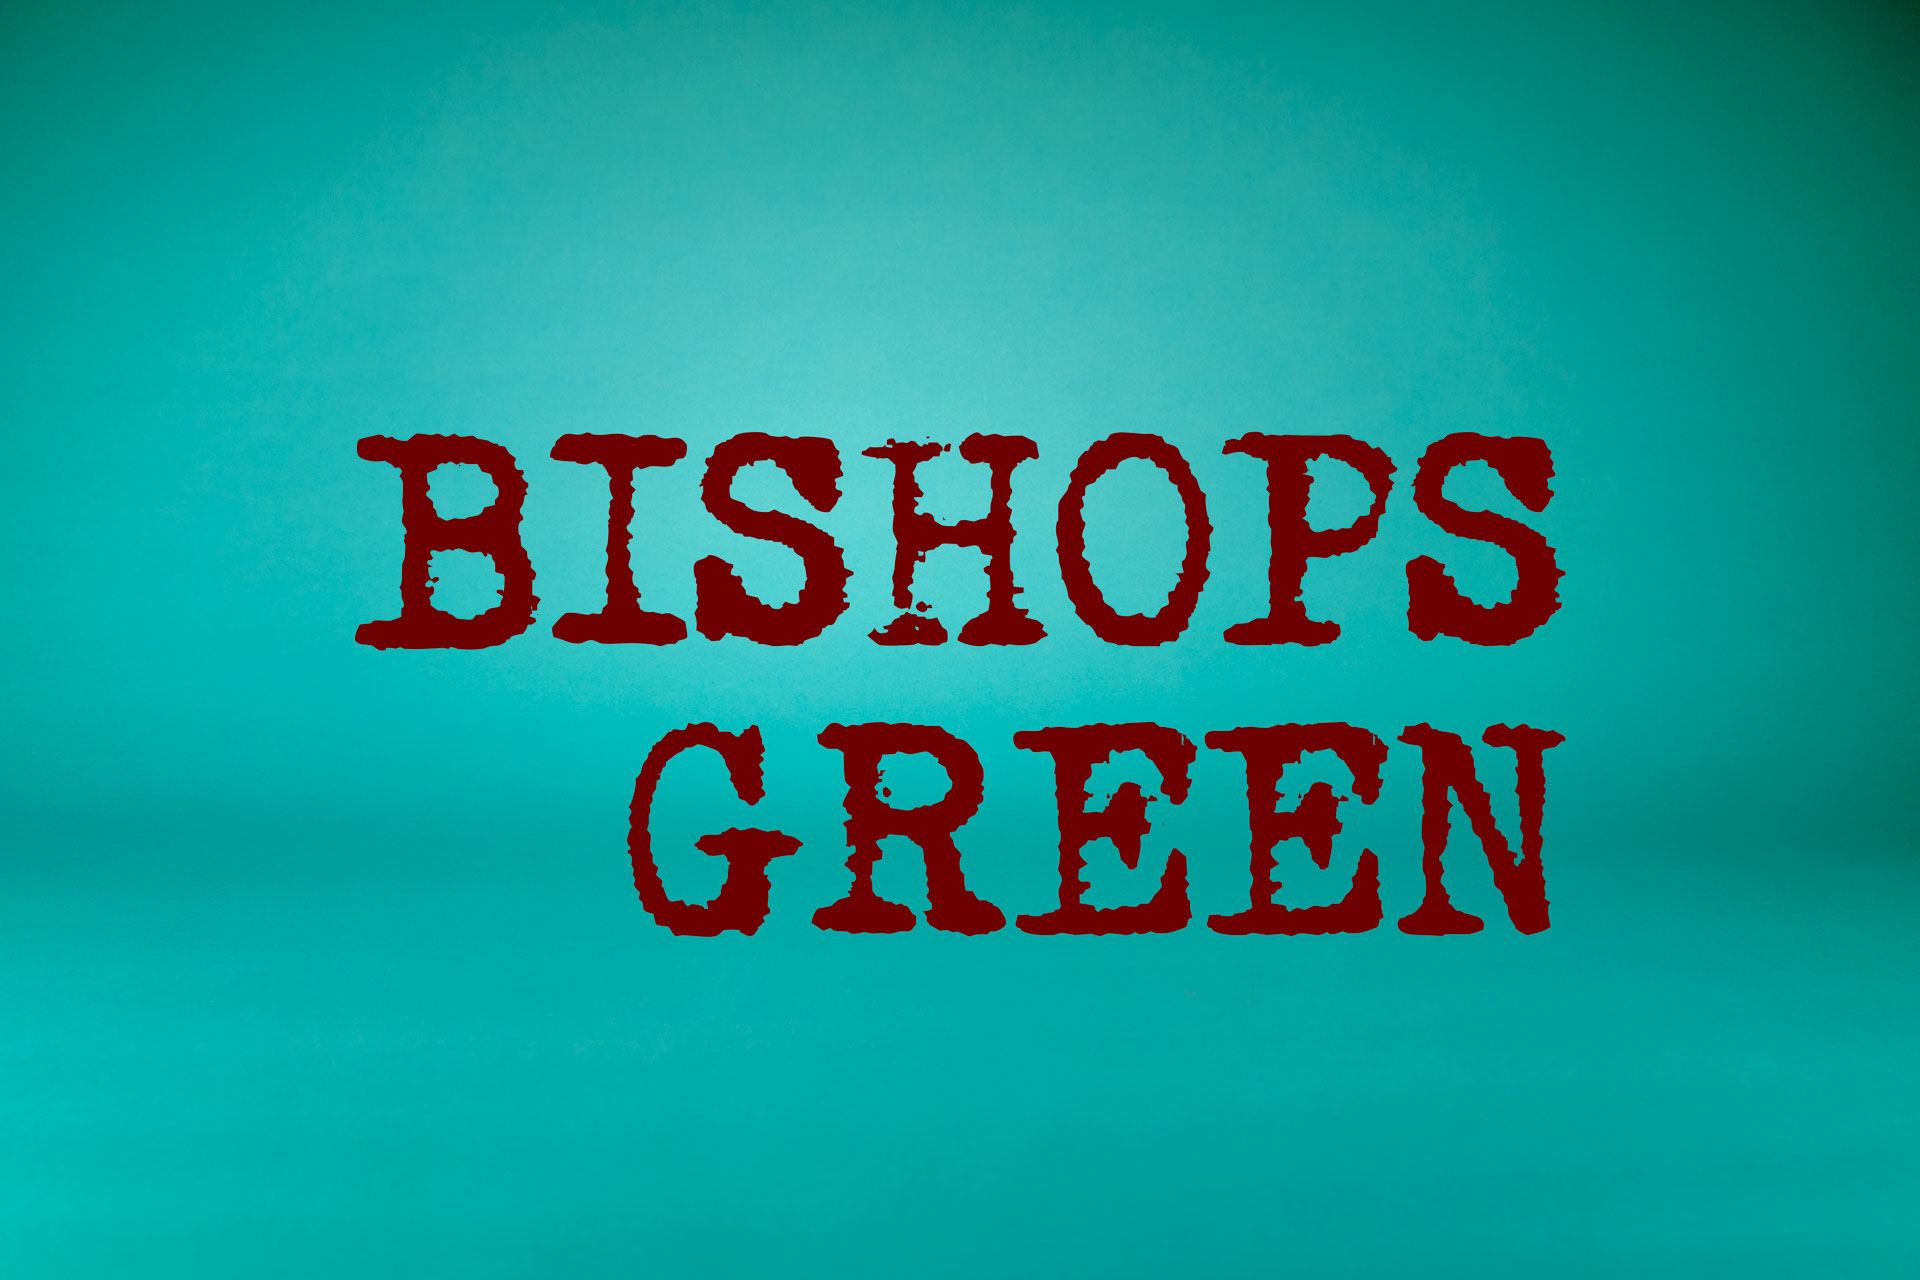 Bishops Green Logo Branding